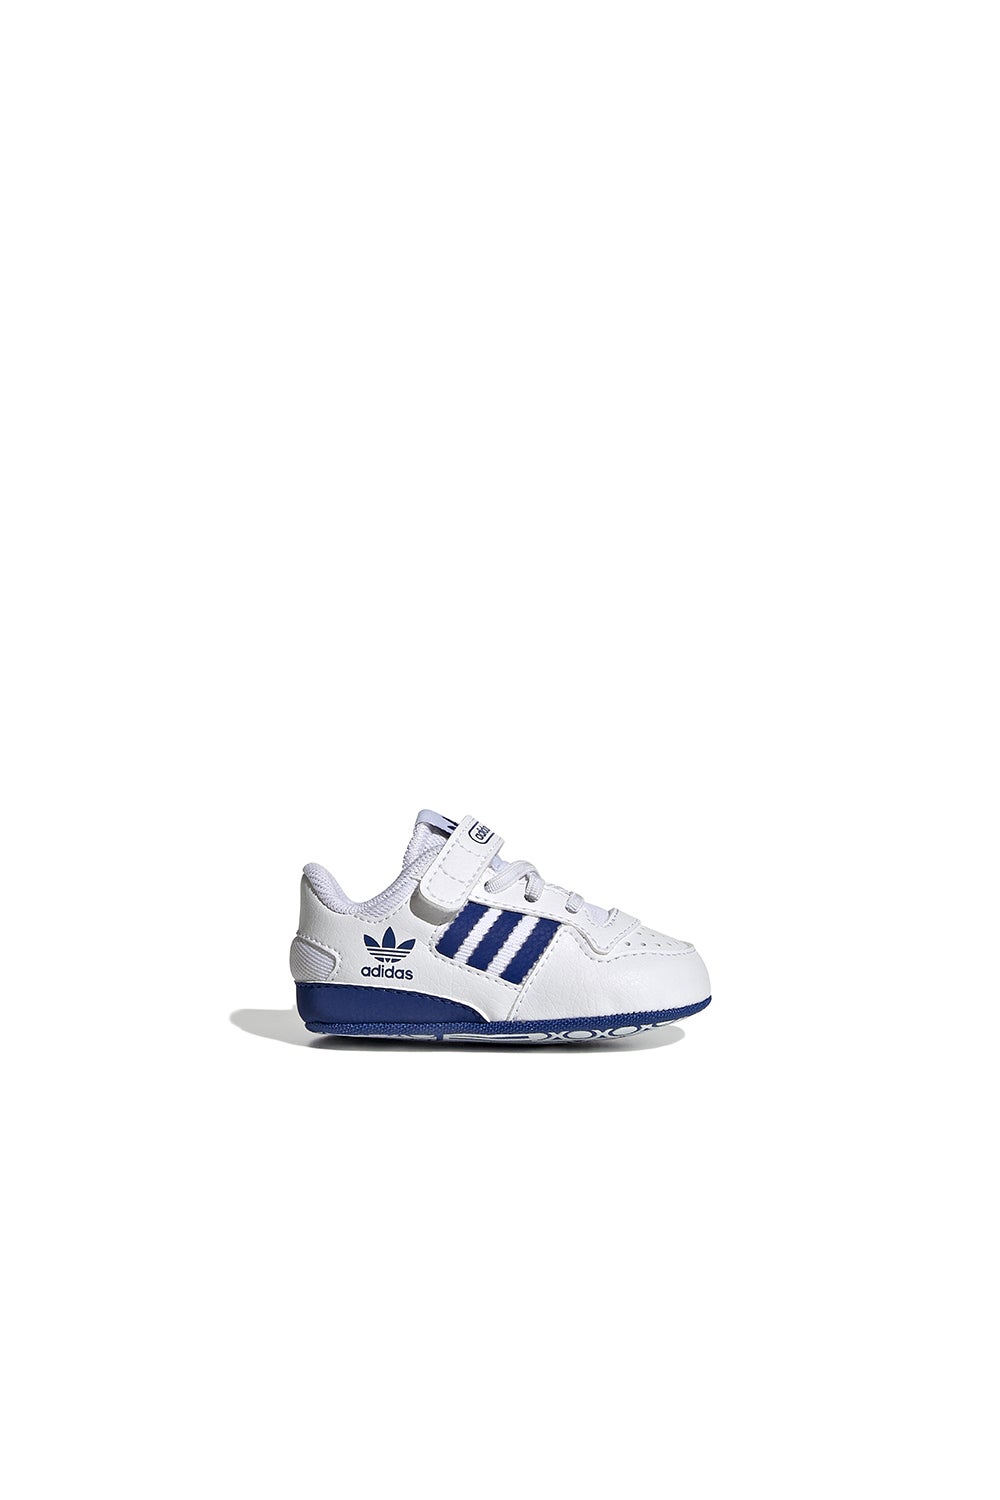 adidas Forum Low Shoes Cloud White/Royal Blue